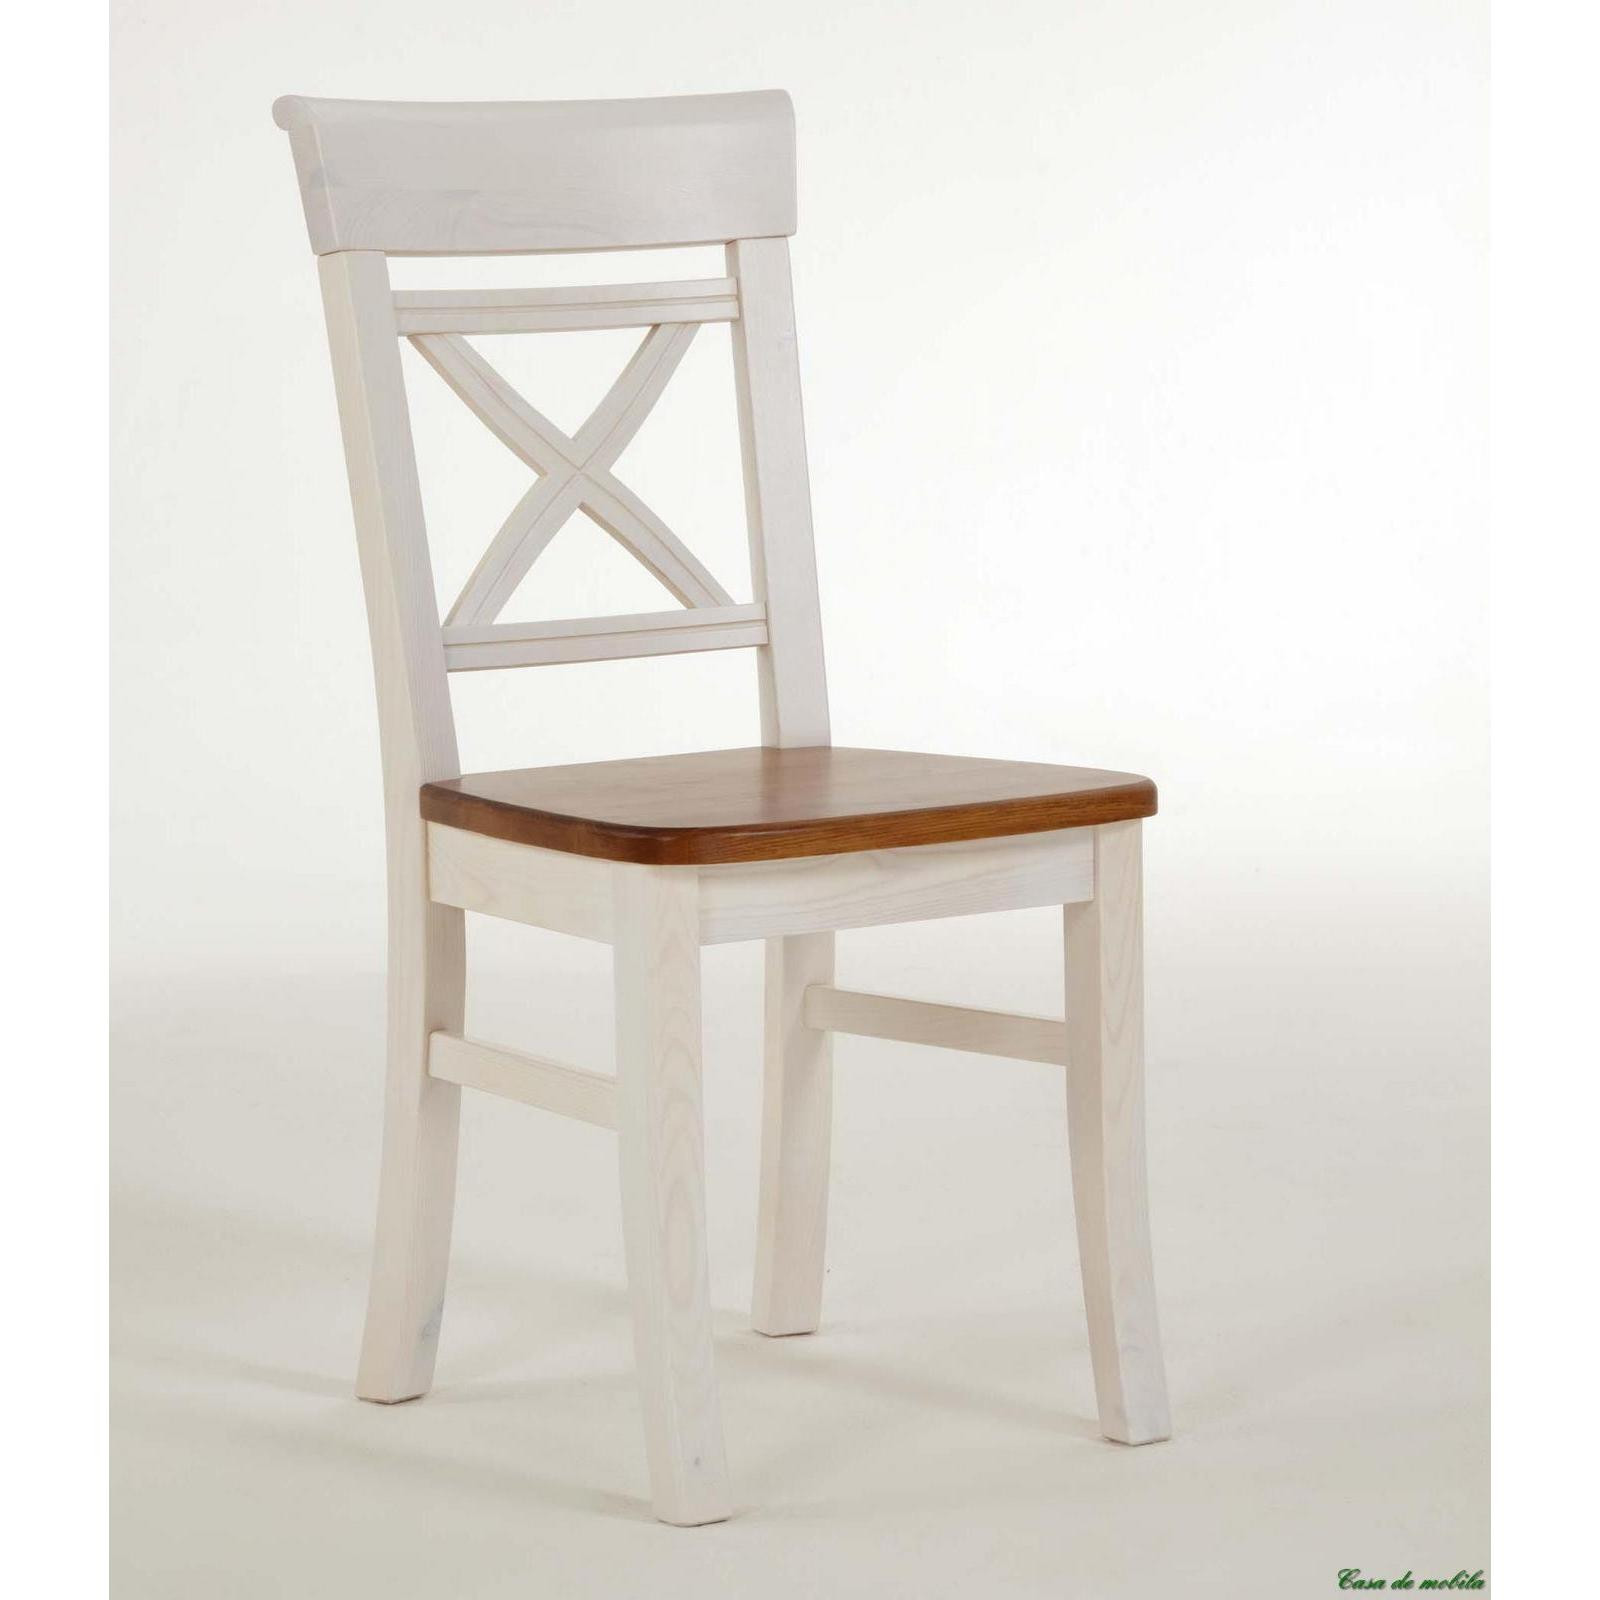 Stuhl Weiß
 Landhaus Stuhl weiß bernsteinfarben lackiert Fjord Holz